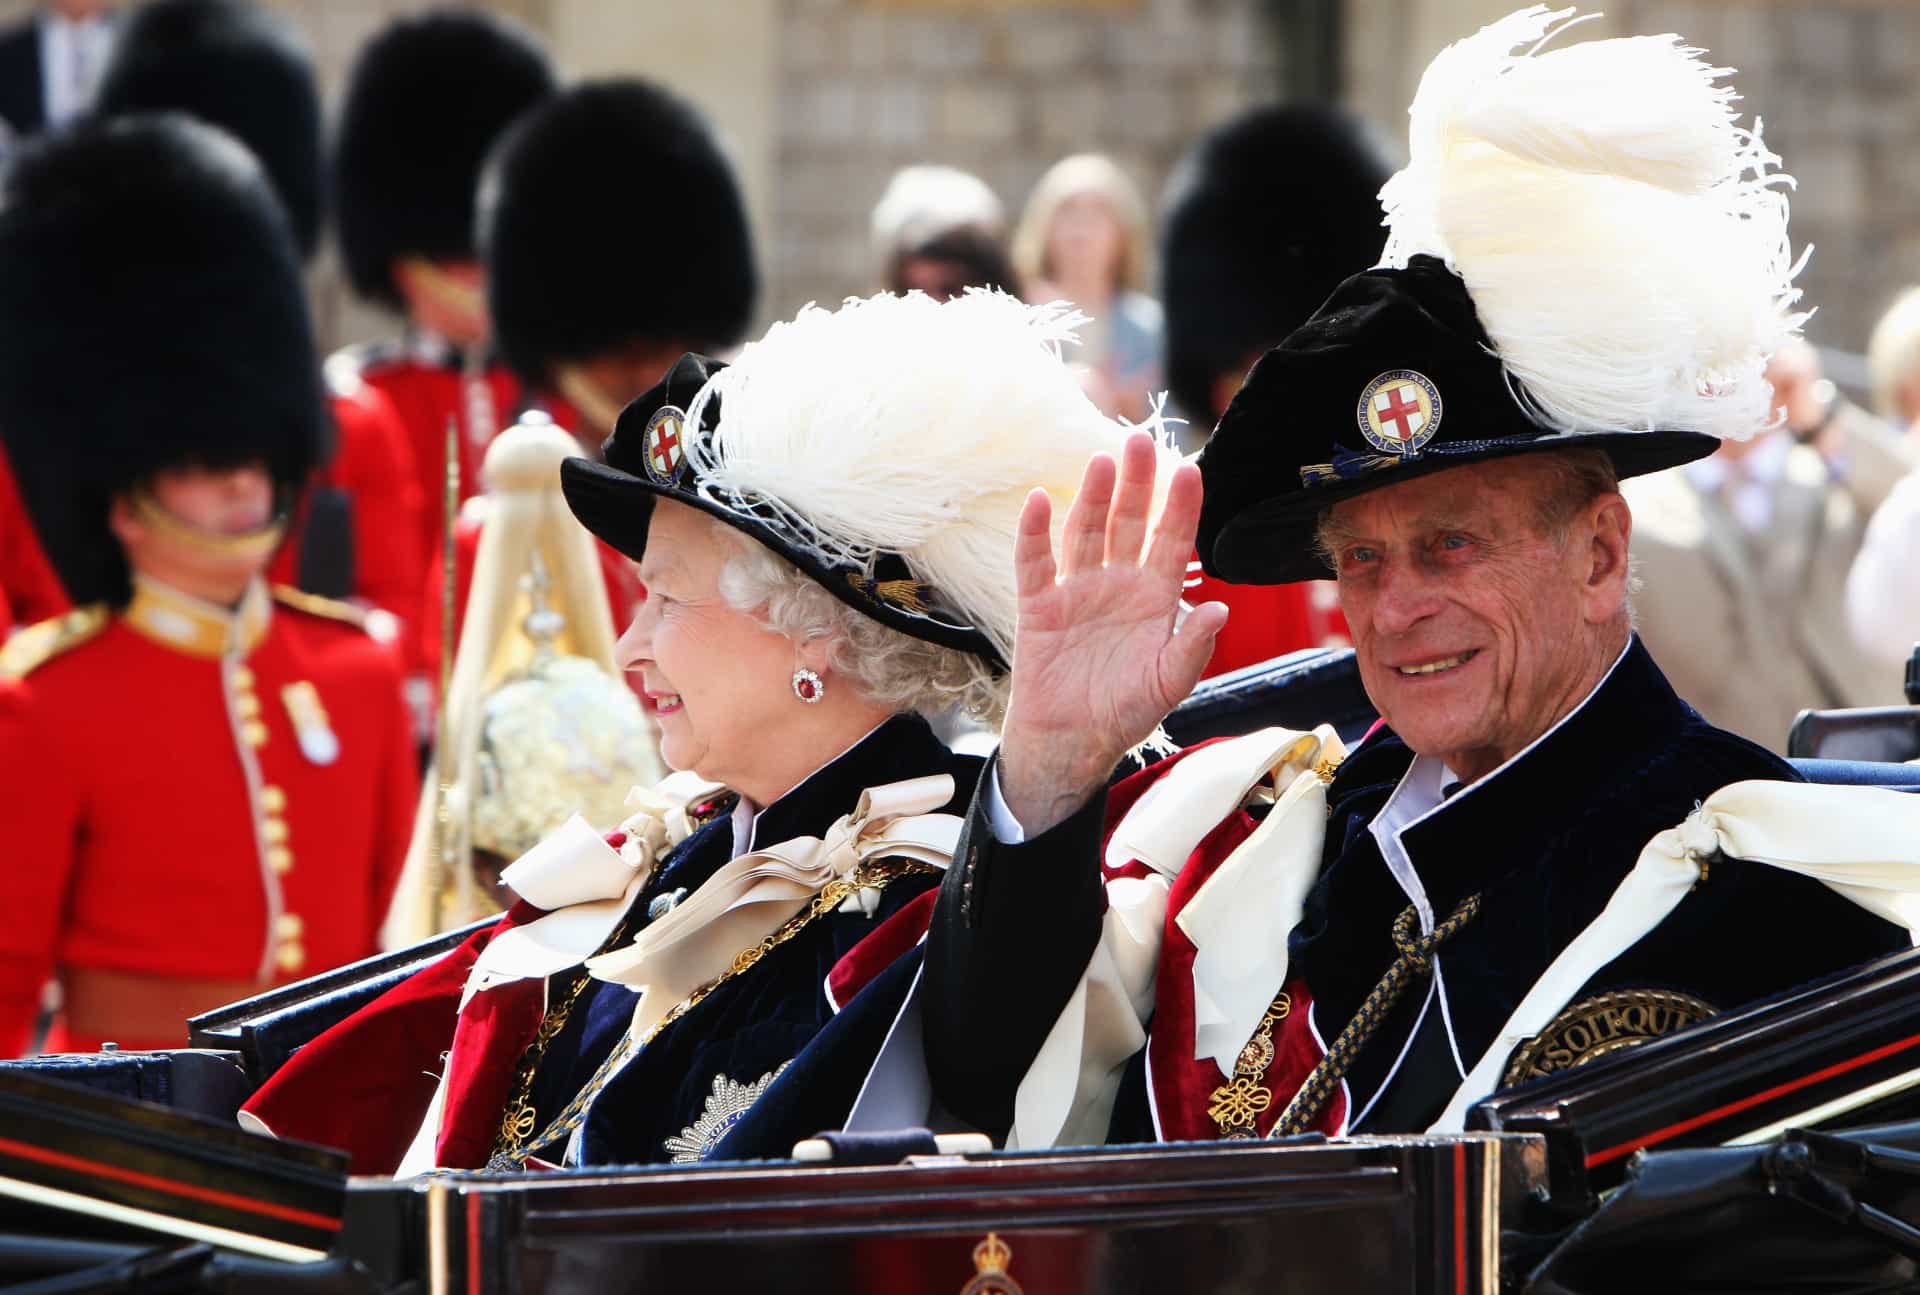 La reina y el príncipe vestidos con trajes de terciopelo, insignias y sombreros con plumas dejando la capilla de St. George en el Garter Day, en el 660.º aniversario de la orden, el 16 de junio de 2008.